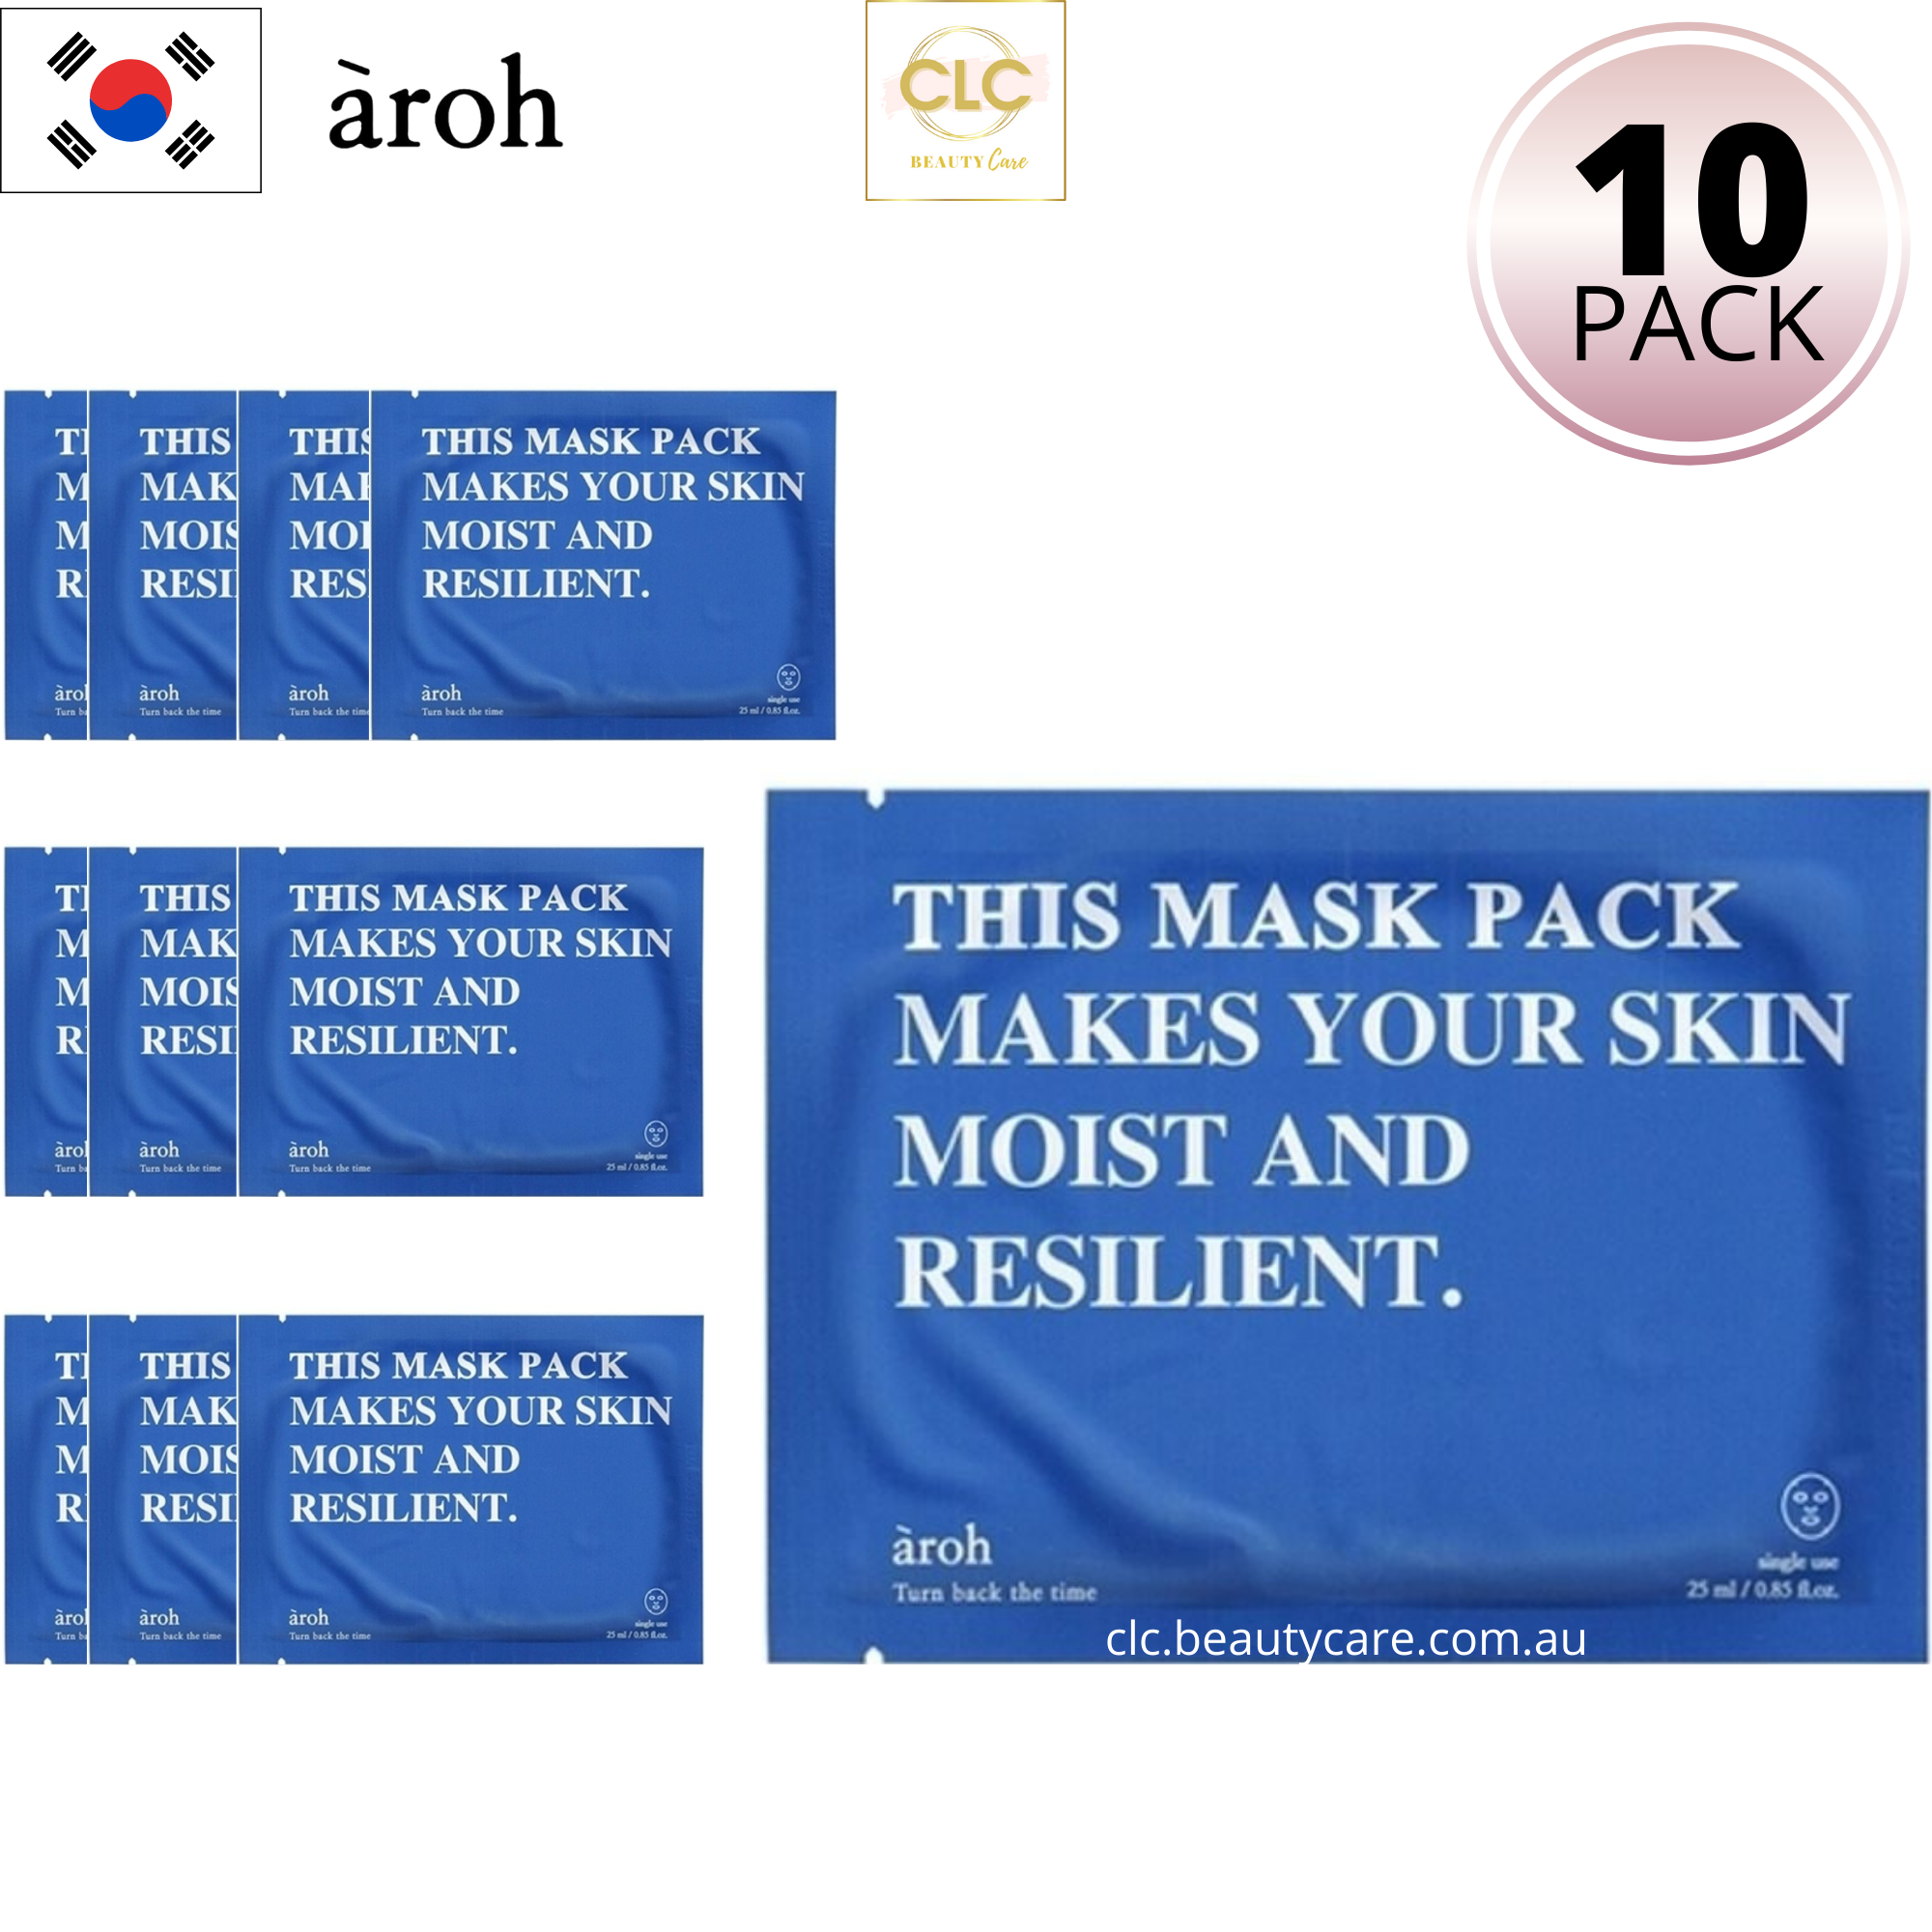 Mặt Nạ Hàn Quốc Tinh Chất Rong Biển Aroh Marine Energy Moisture Mask - 1 Hộp 10 Masks